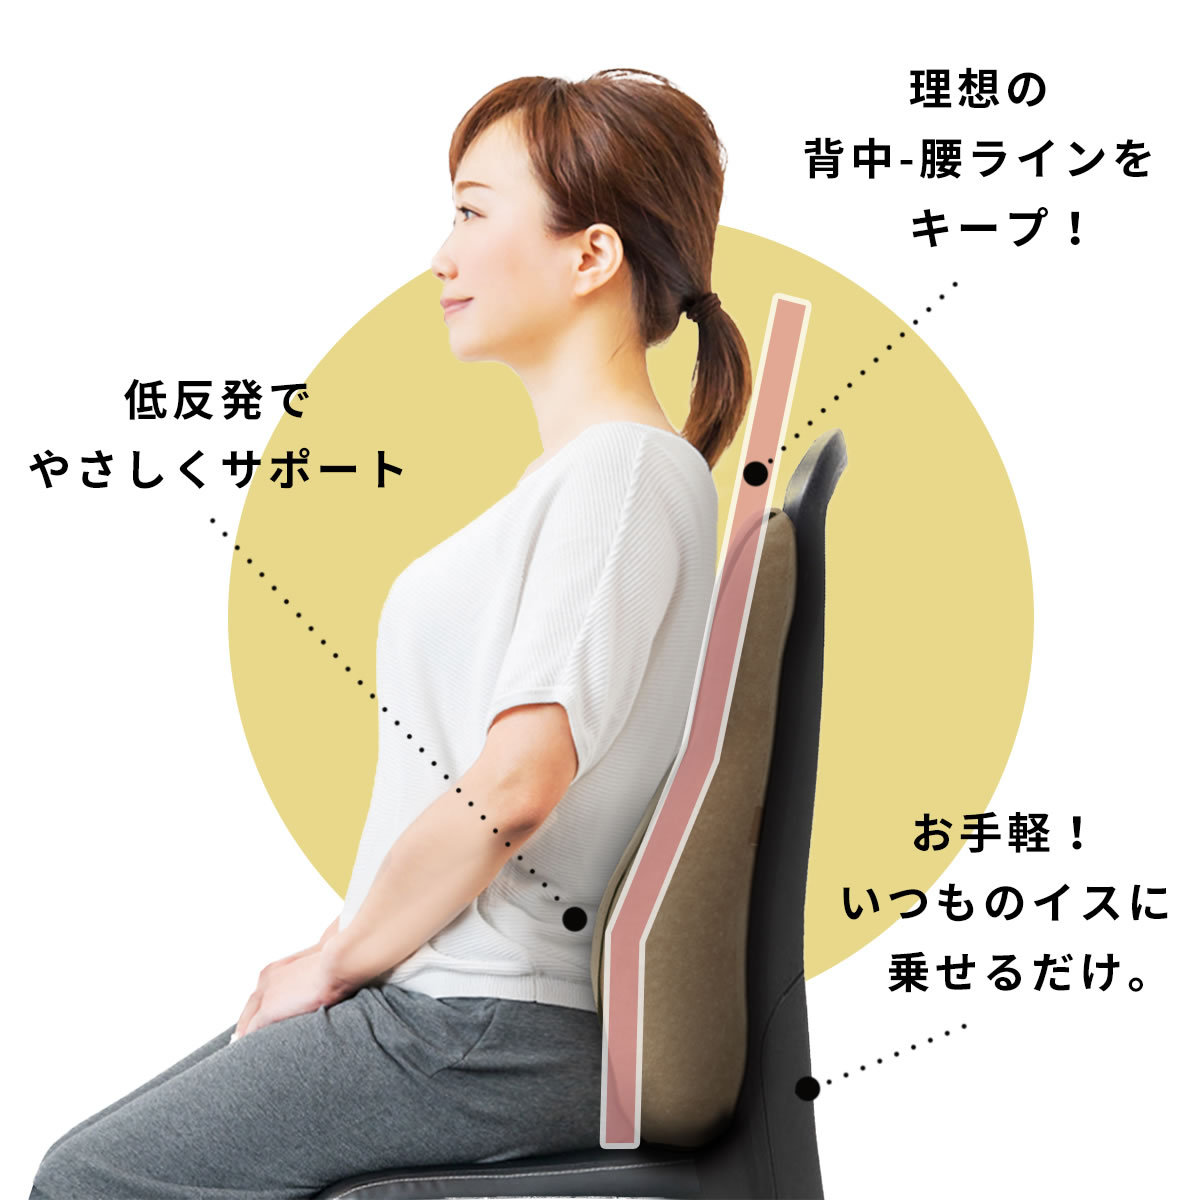 腰を楽に❤️腰枕❤️低反発ランバーサポート 姿勢ケア